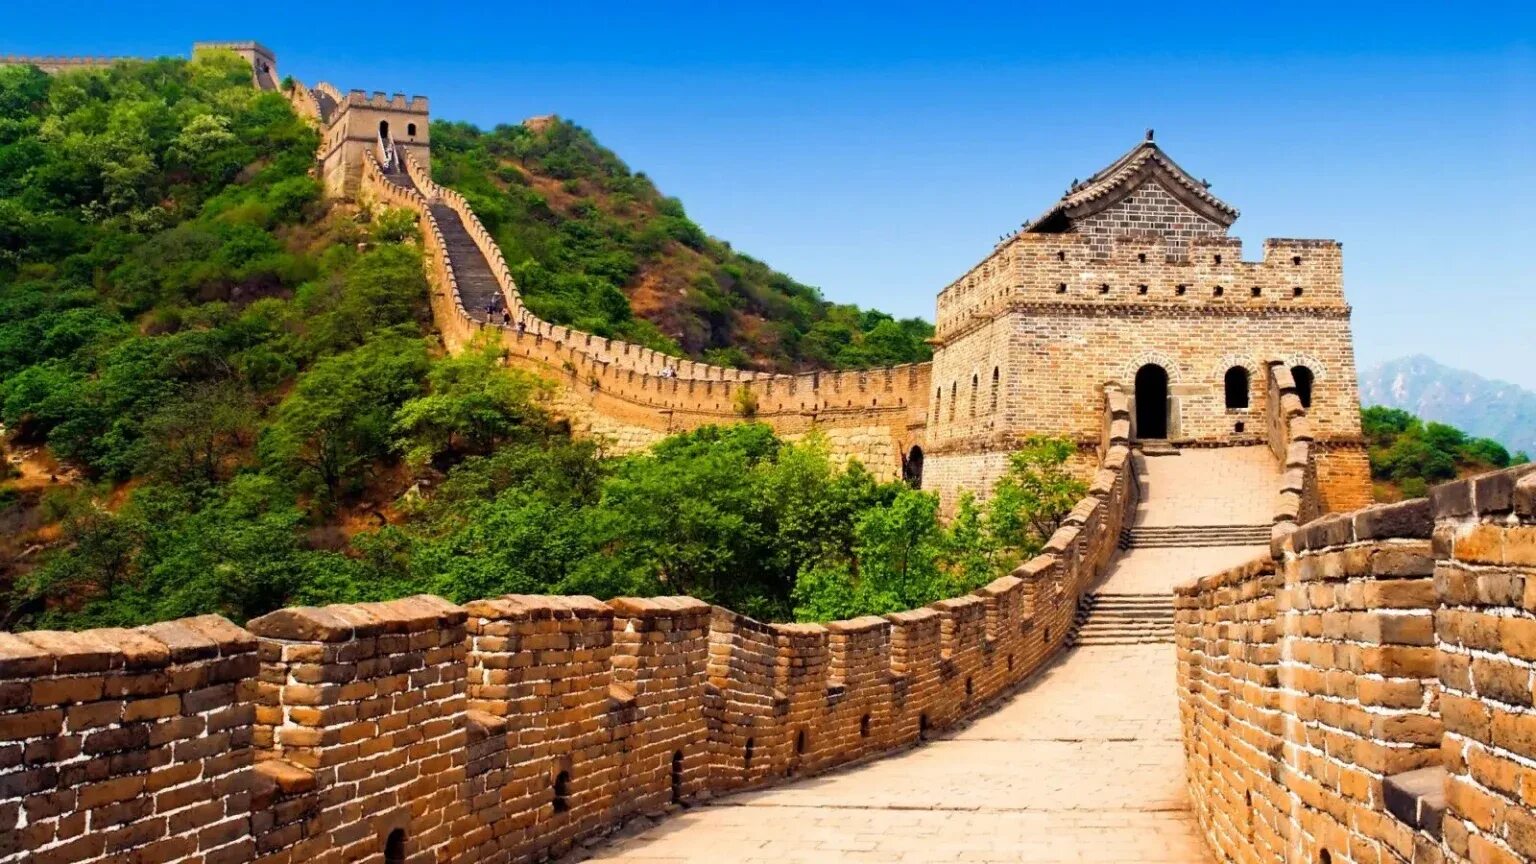 Китайская стена достопримечательность. Великая китайская стена Династия Цинь. Пекин китайская стена. Великая китайская стена достопримечательности Пекина. Великая китайская стена в древнем Китае.